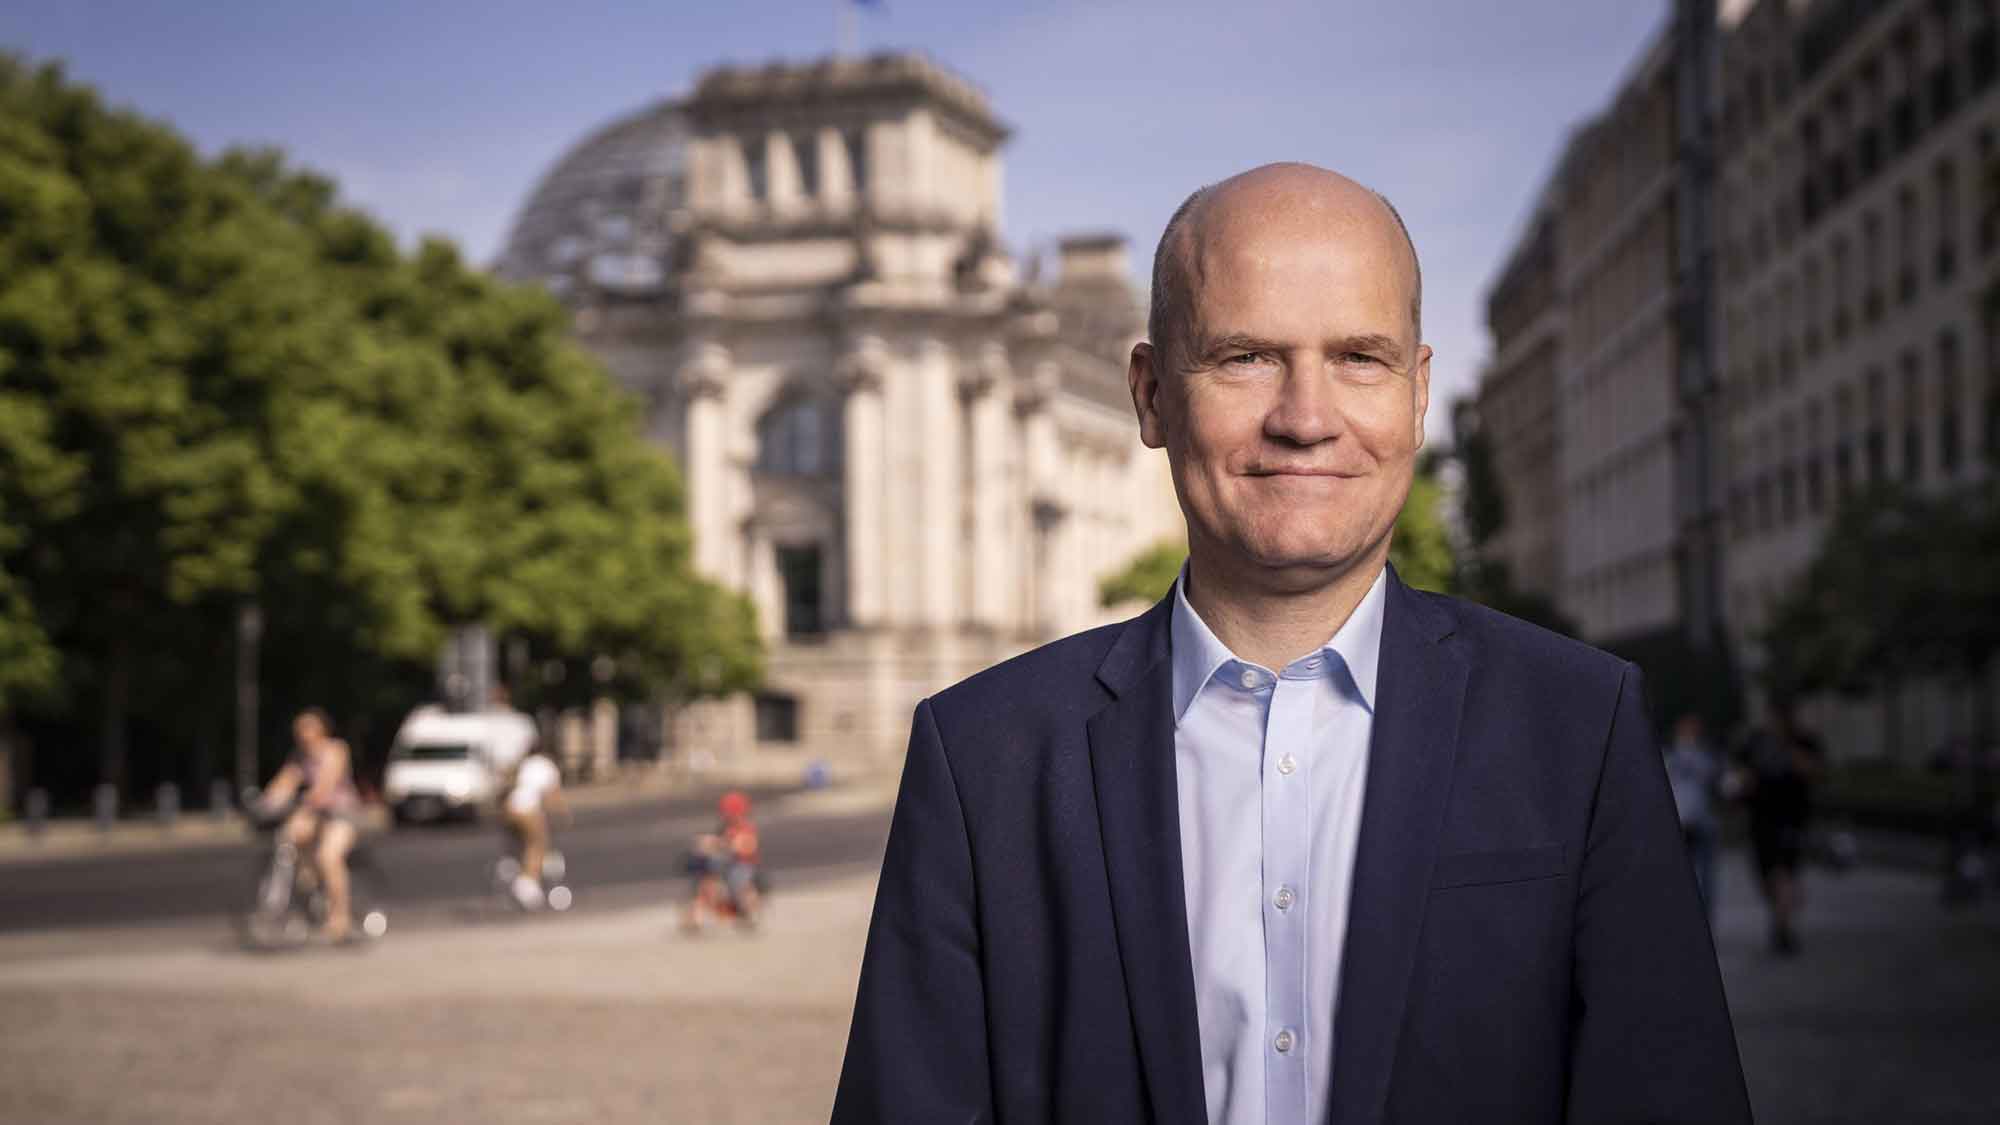 CDU Gütersloh: Ralph Brinkhaus begrüßt Initiative zur Arbeitsmarkt Integration von Flüchtlingen